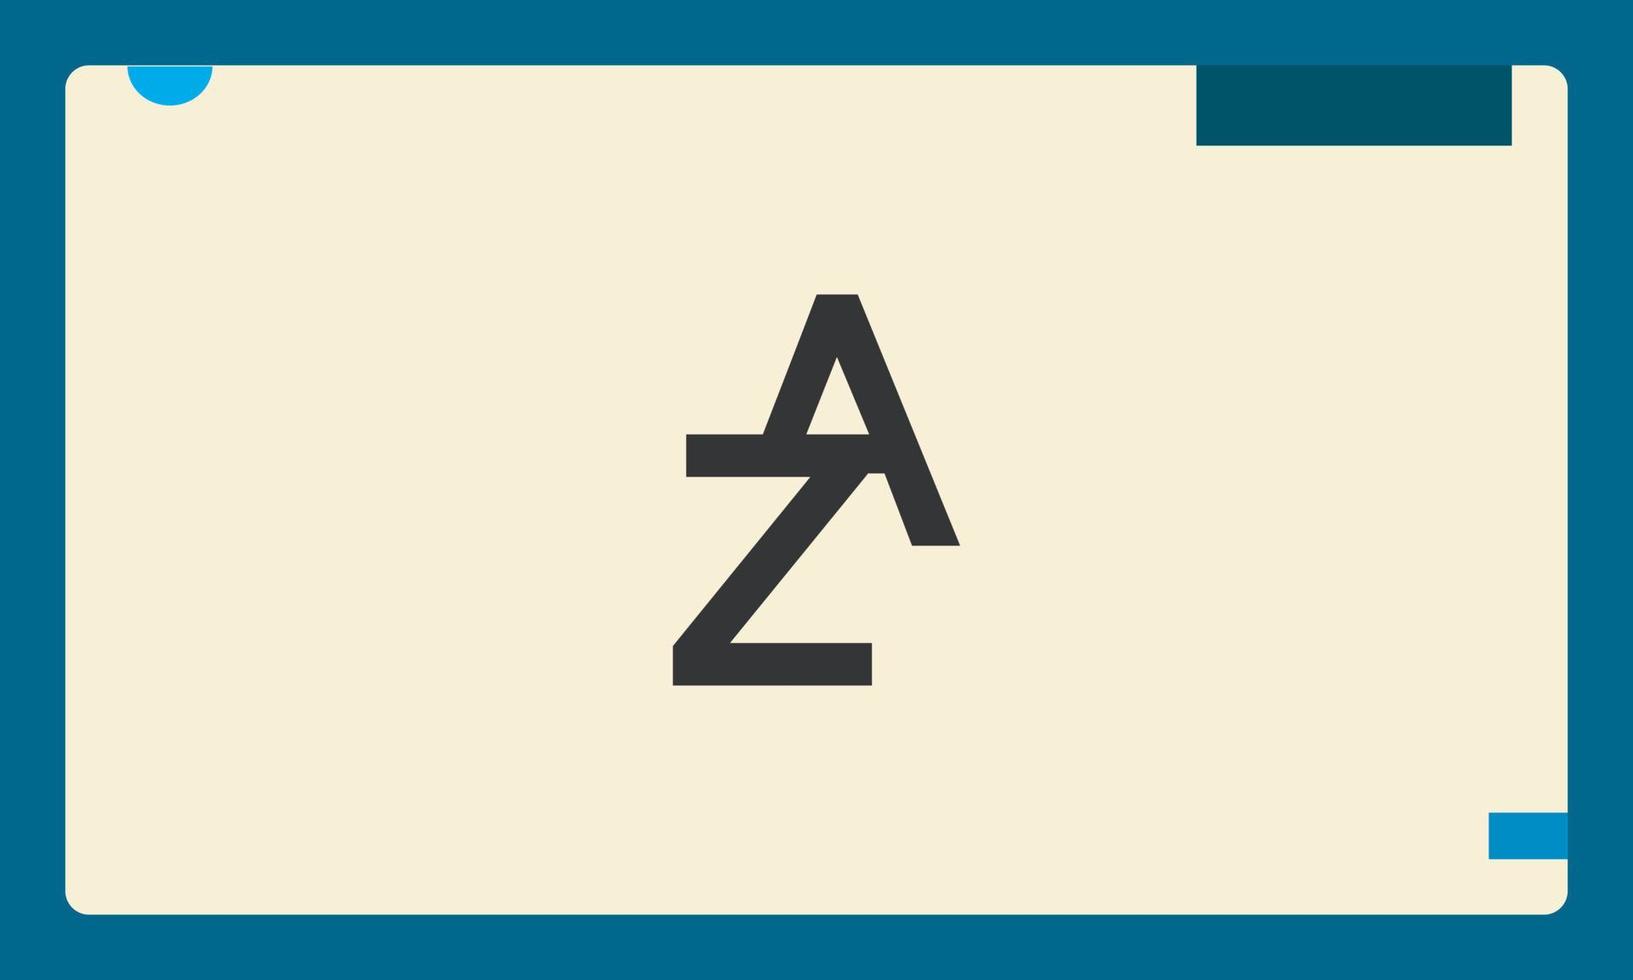 letras del alfabeto iniciales monograma logo za, az, z y a vector